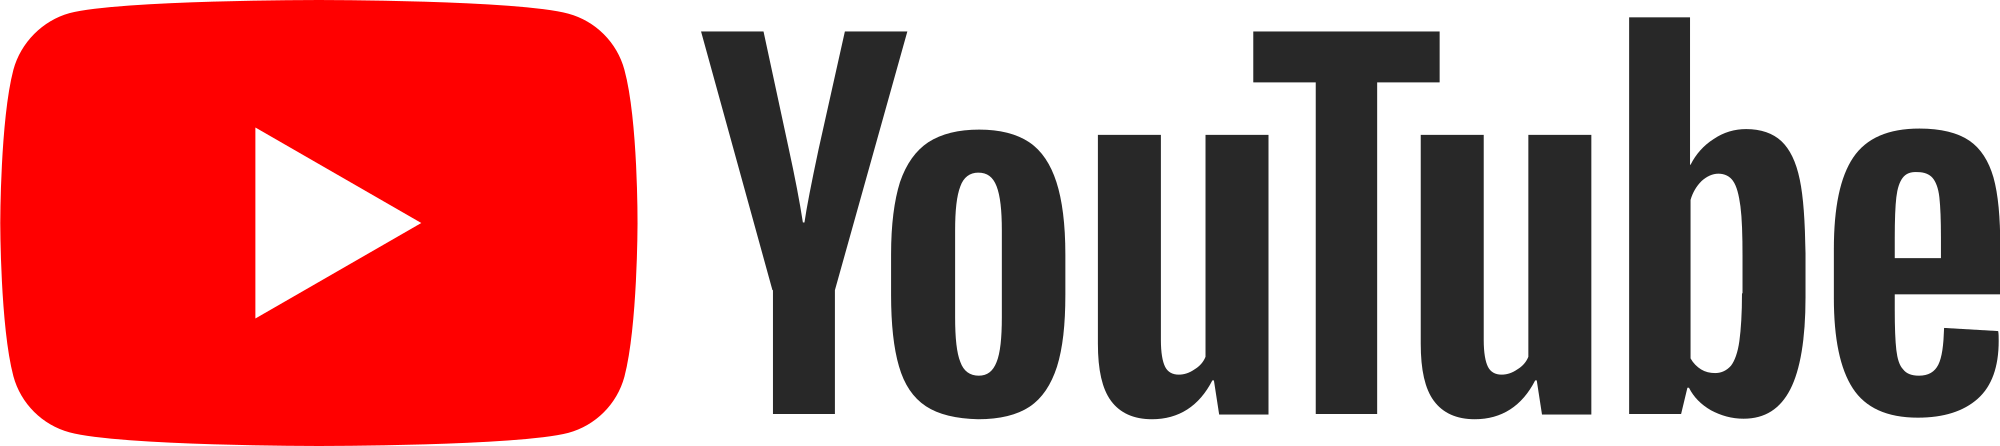 youtube-logo_antonenpalvelu